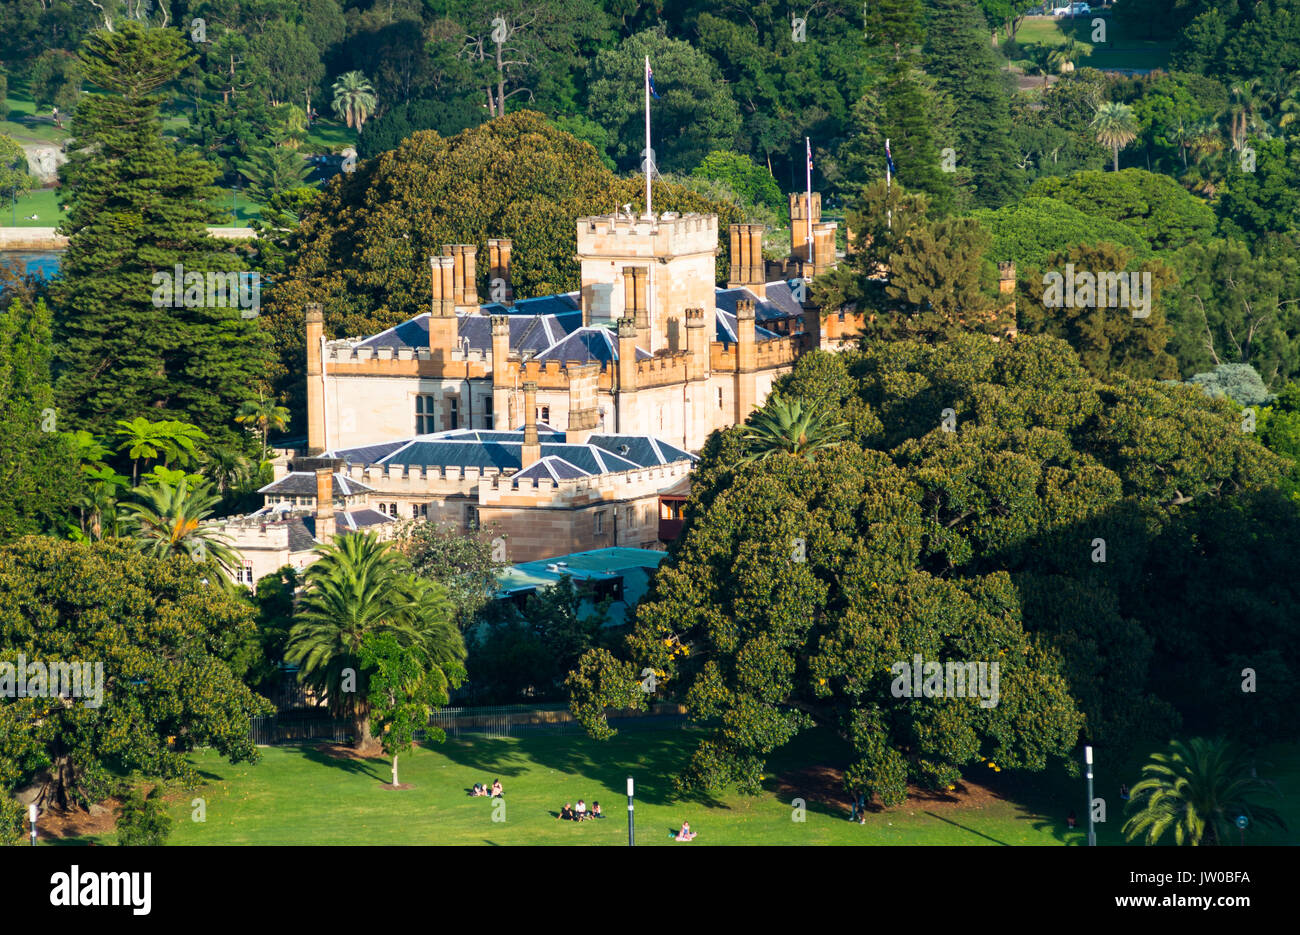 Government house next to Royal Botanic Gardens, Sydney, NSW, Australia. Stock Photo